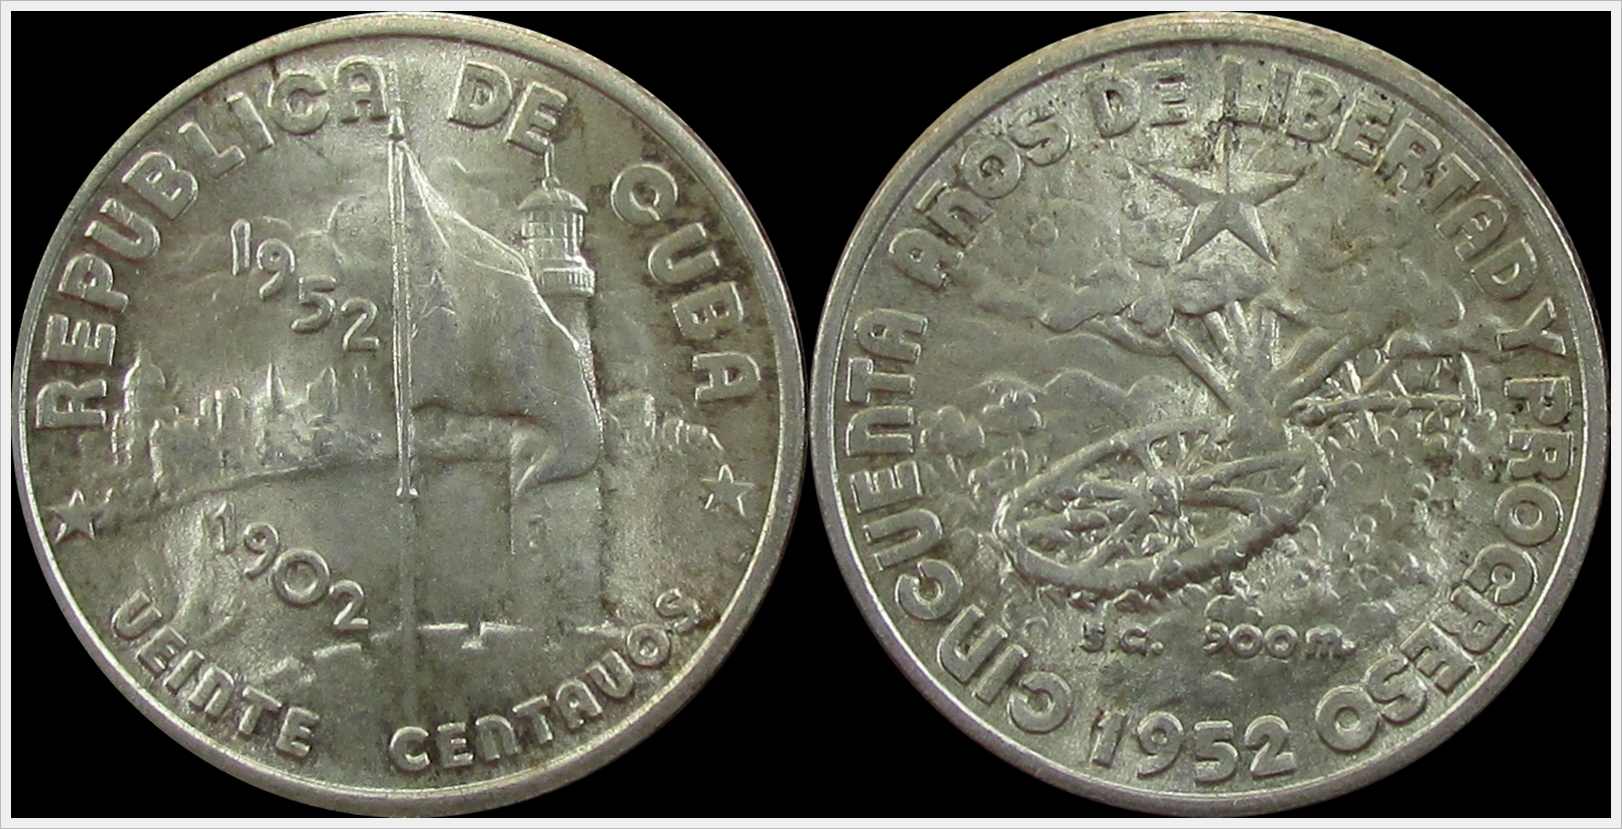 Cuba 1952 20 Centavos.jpg